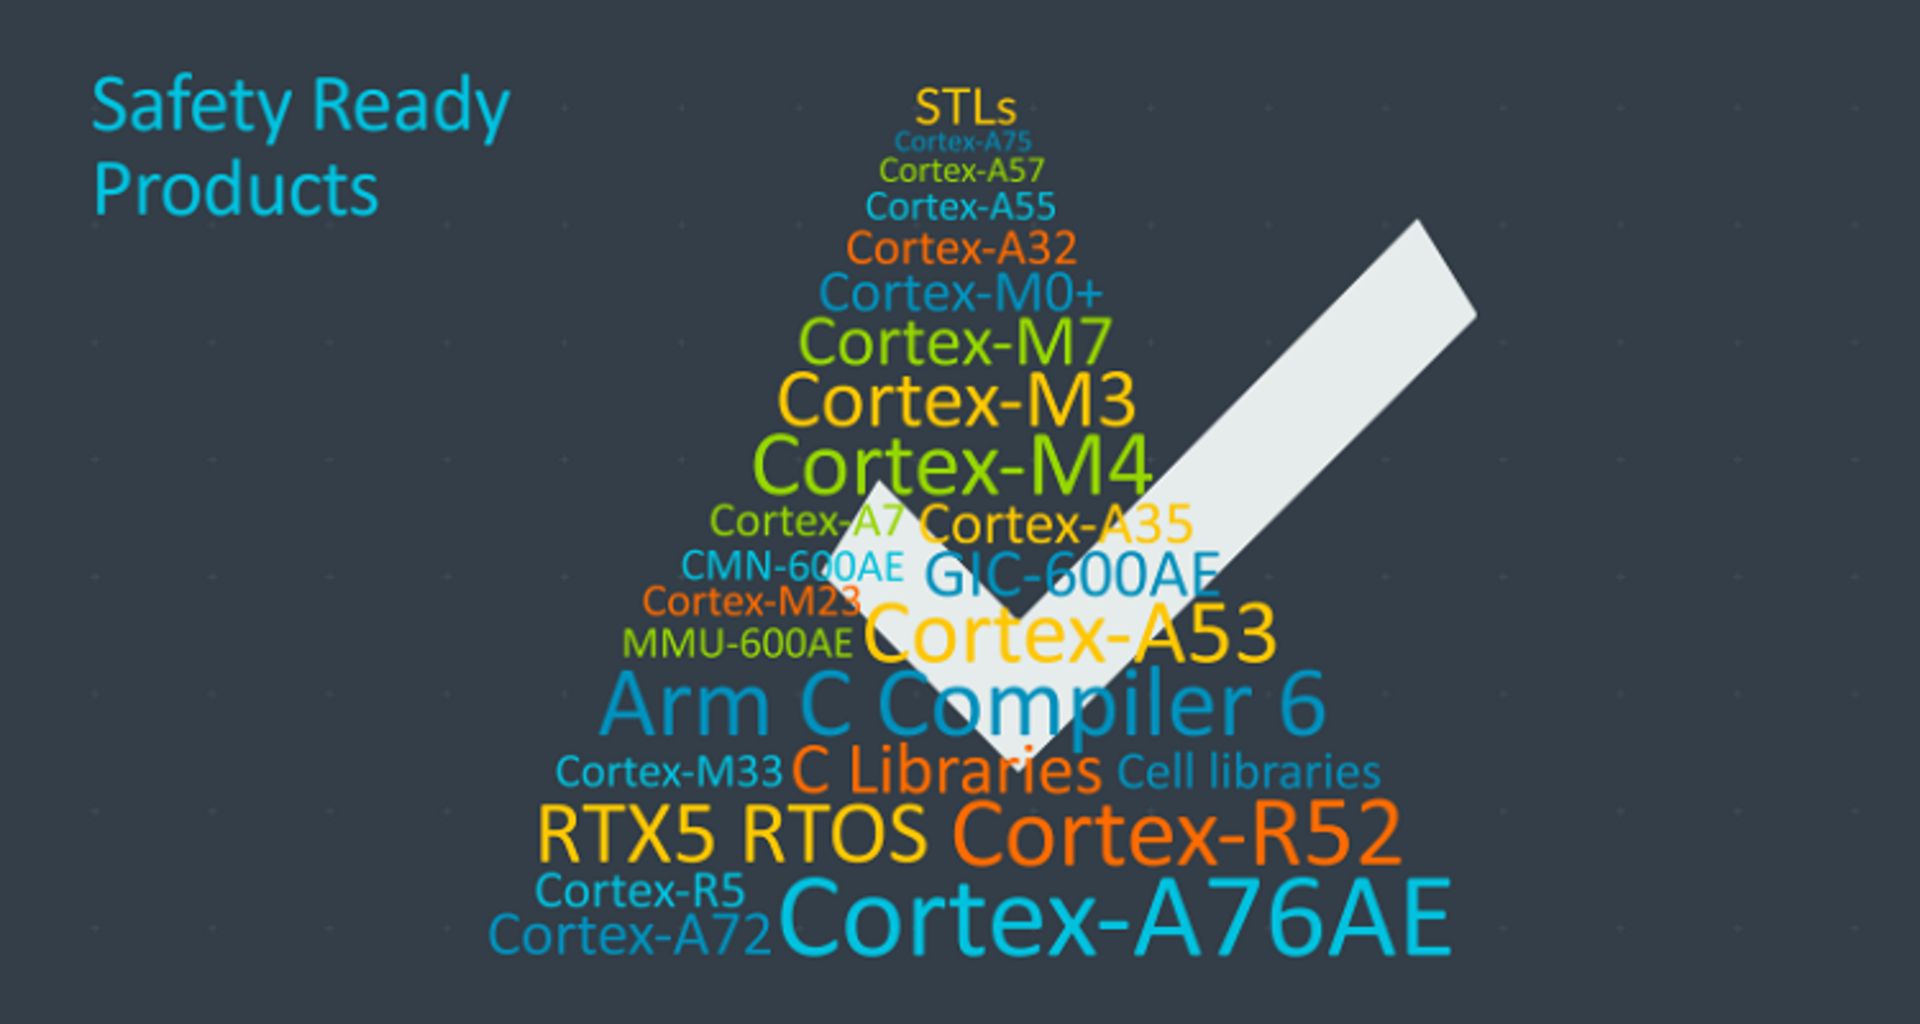 Cortex A76AE